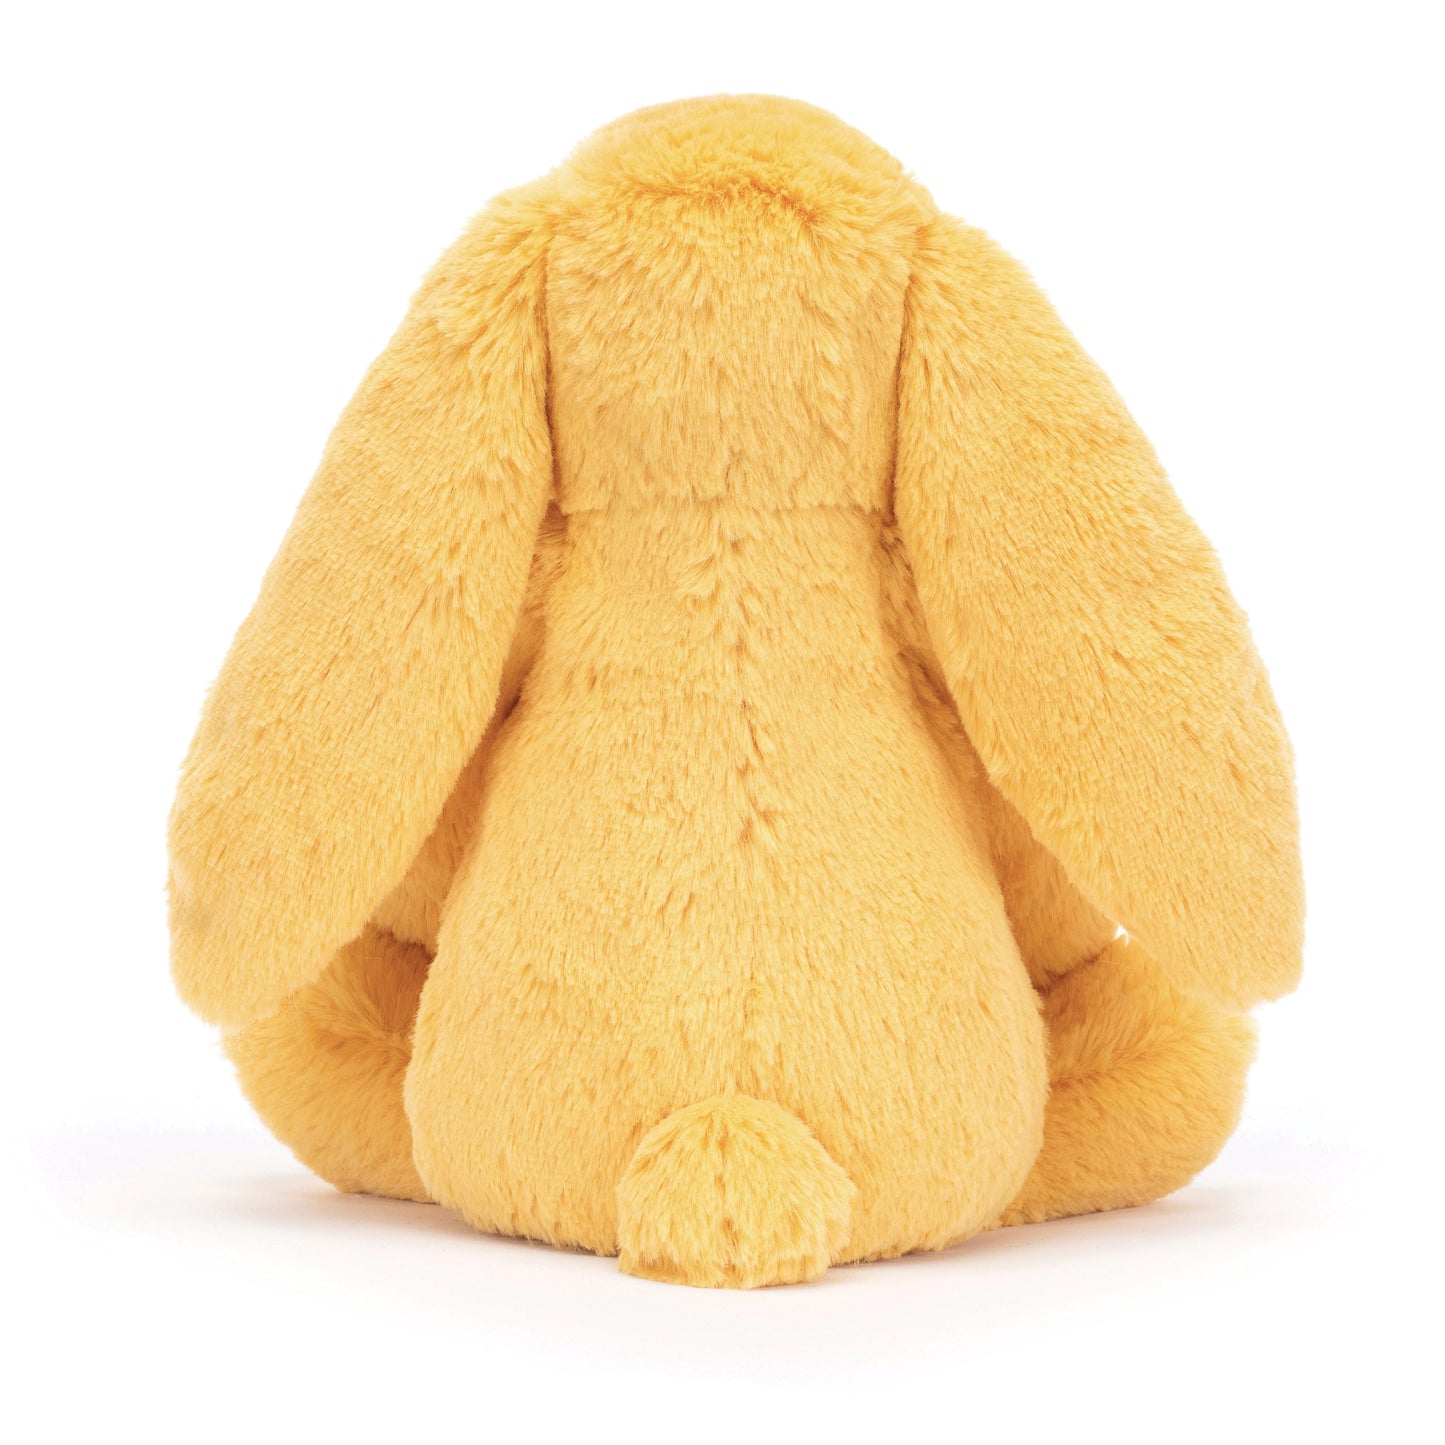 Bashful Sunshine Bunny - Medium 31cm